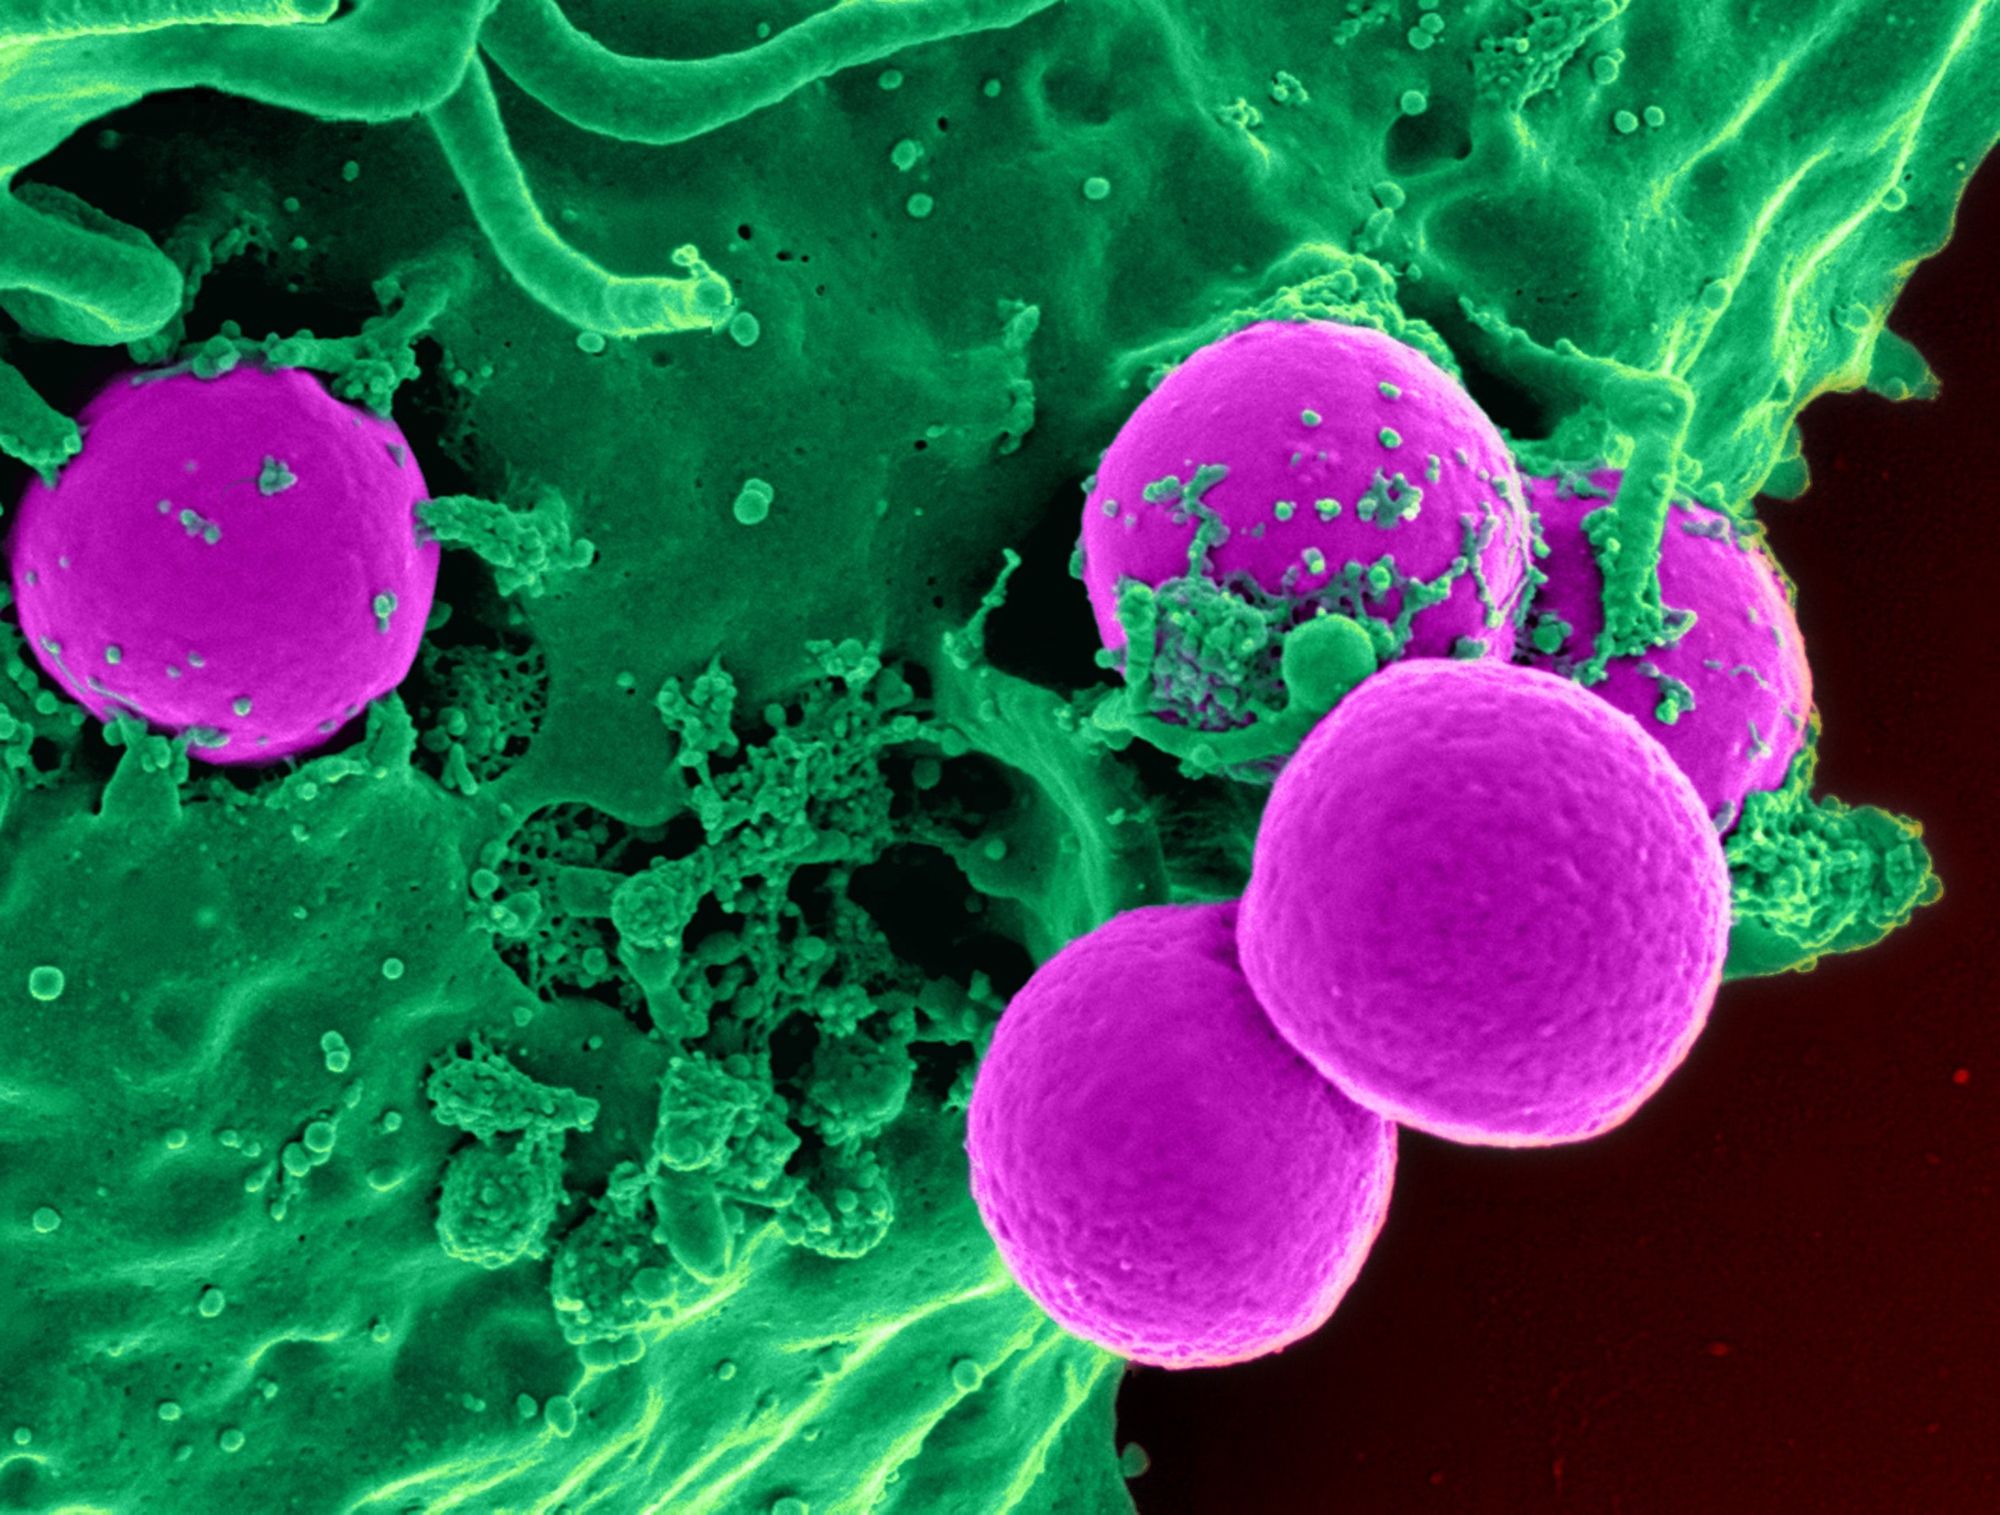 Boreliózu by mohlo účinněji léčit zapomenuté antibiotikum